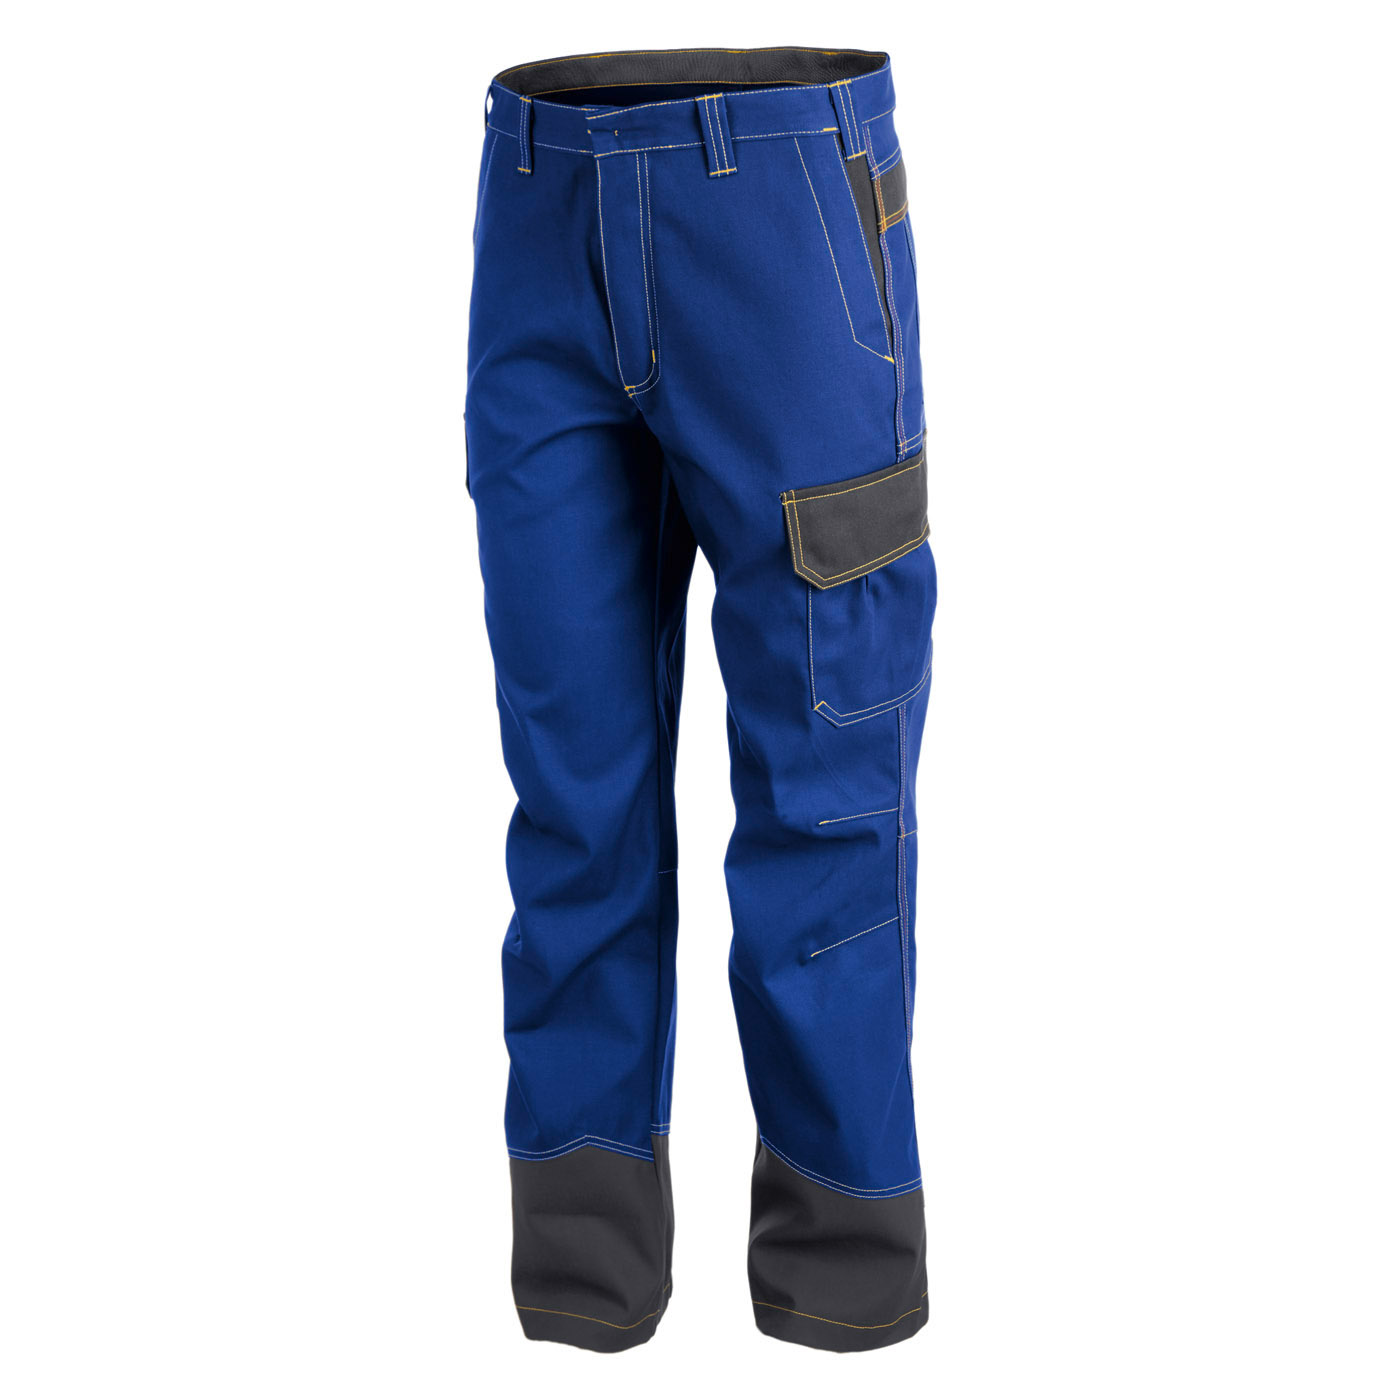 BEZPIECZEŃSTWO 6 spodnie PPE 3